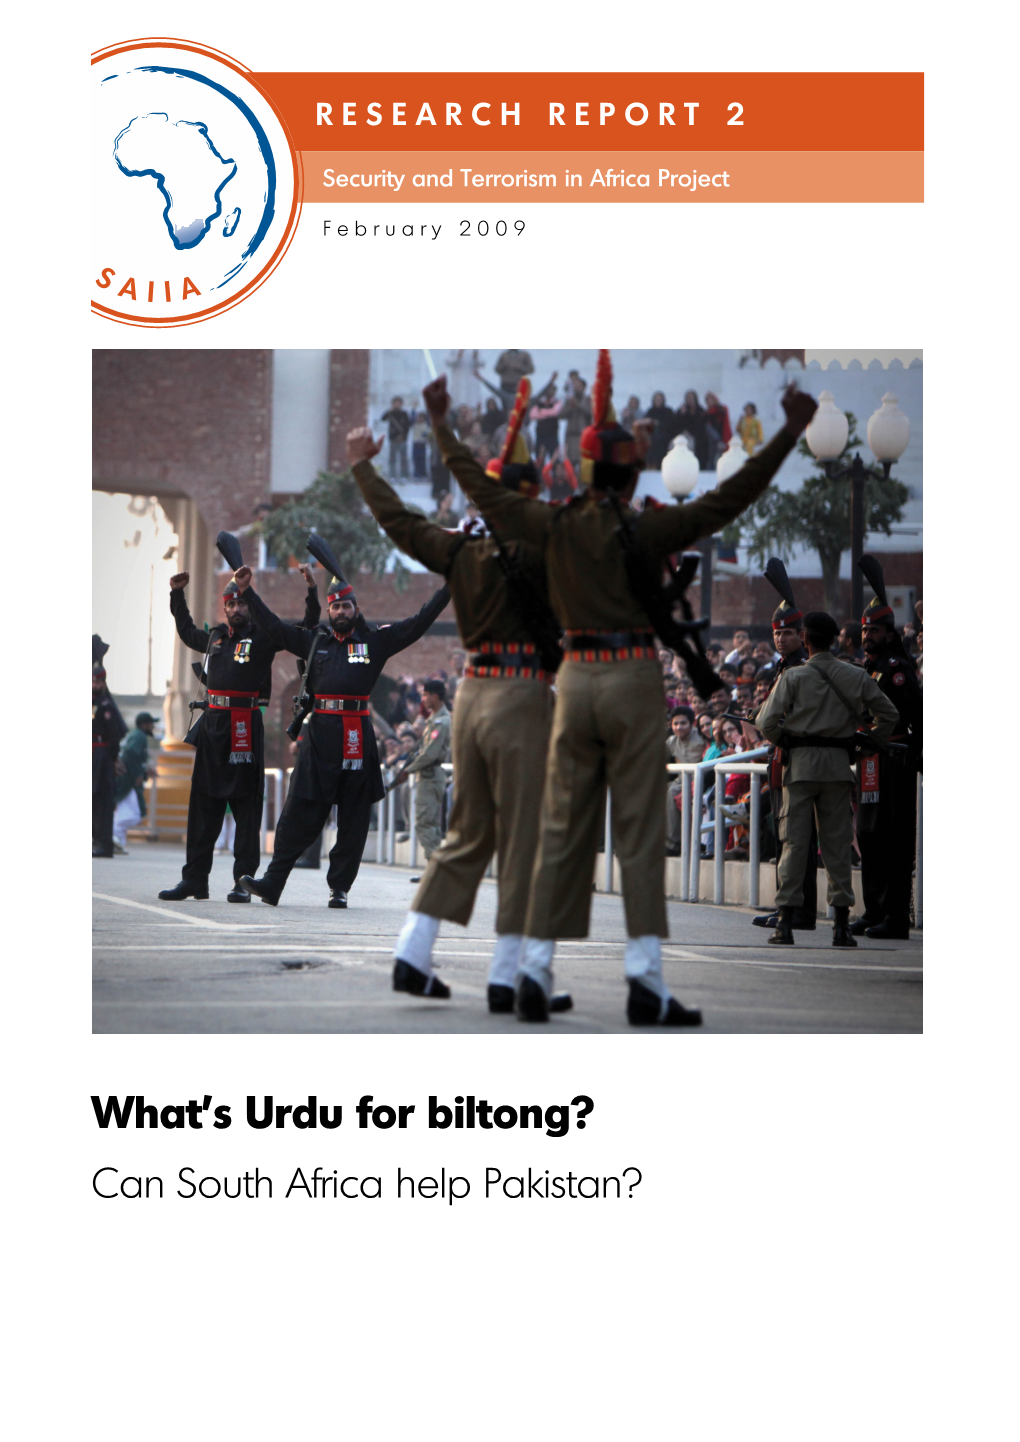 What's Urdu for Biltong?